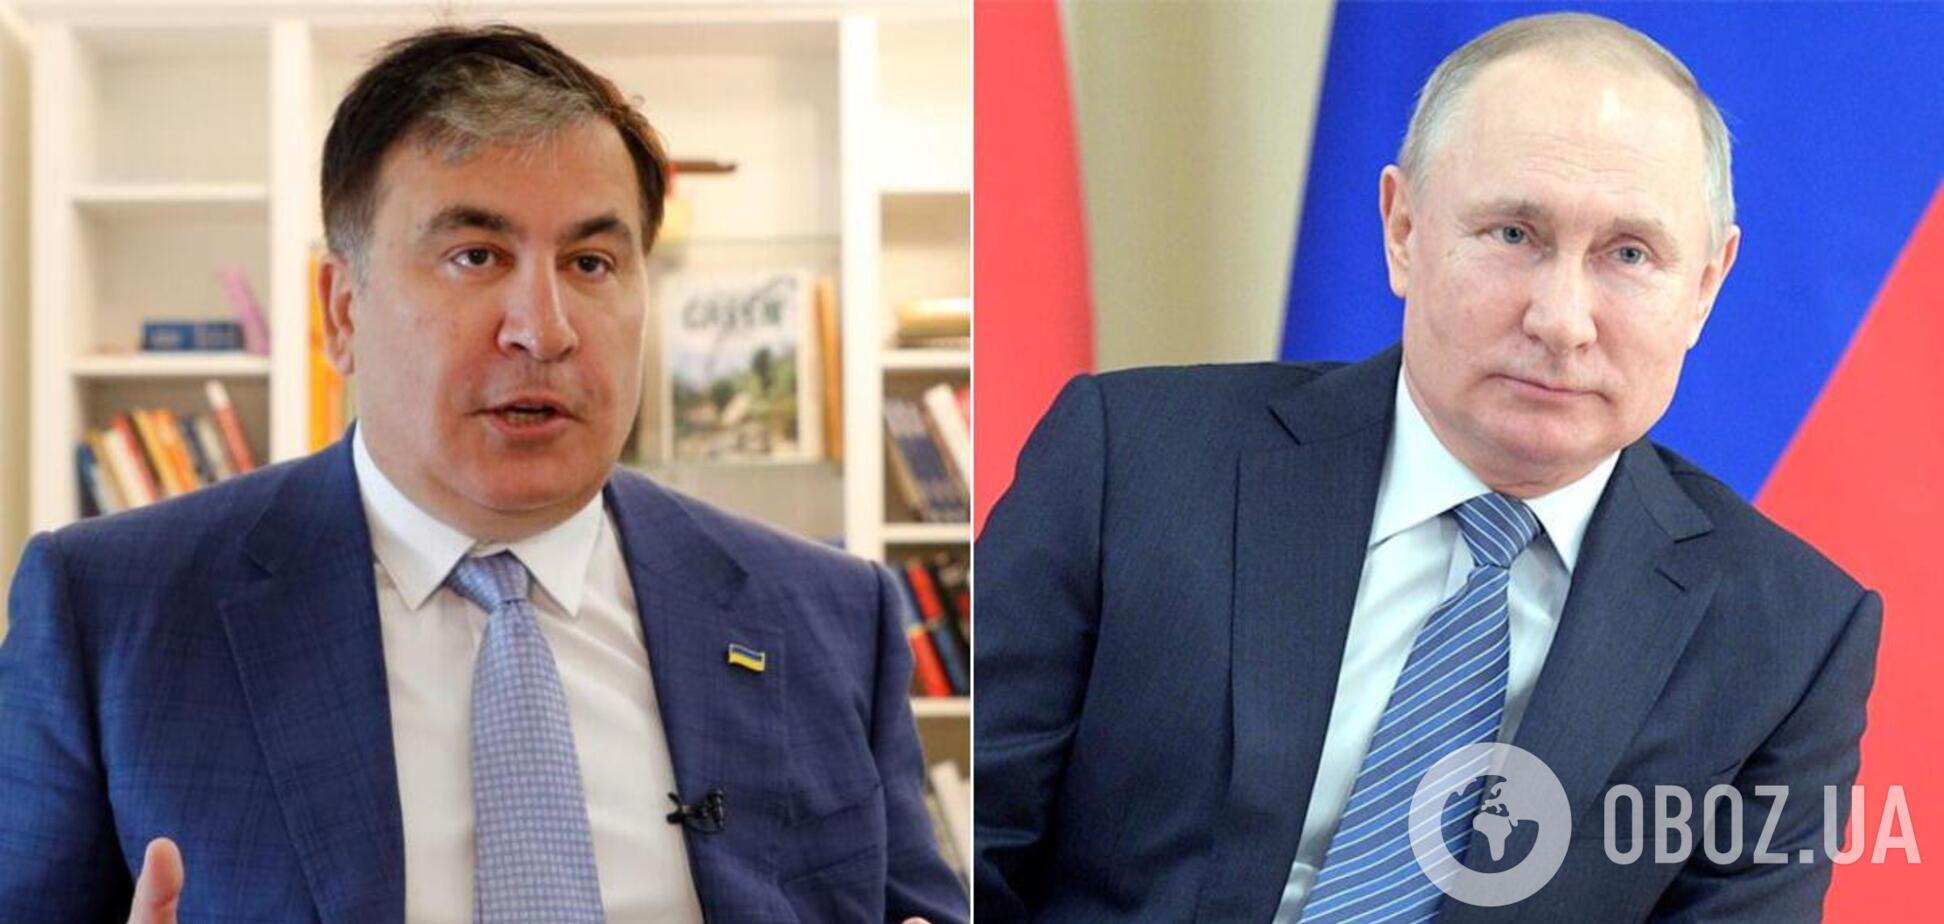 Саакашвили вспомнил, как Путин грозился 'повесить его за яйца'